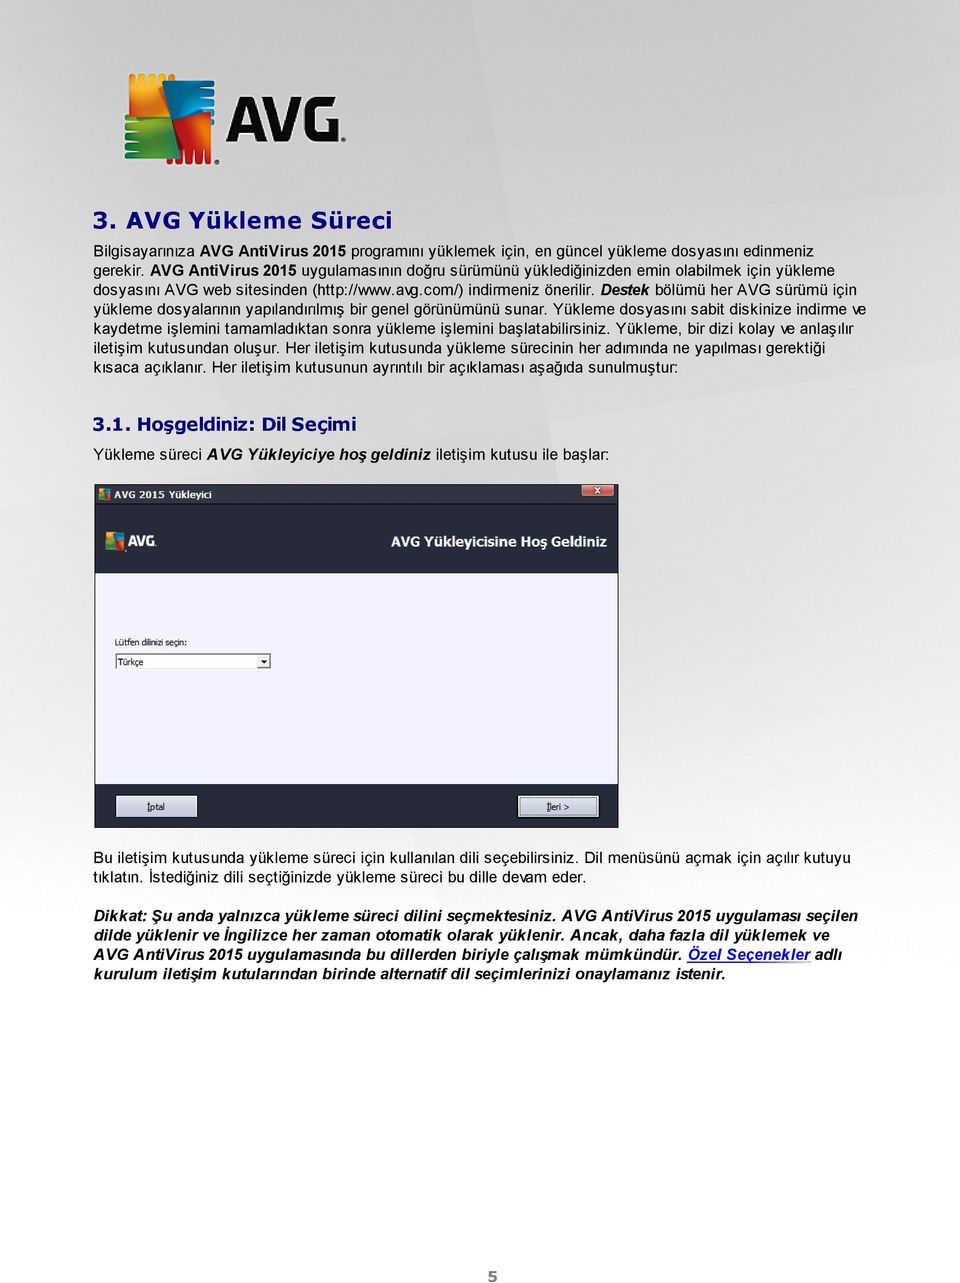 Destek bölümü her AVG sürümü için yükleme dosyalarının yapılandırılmış bir genel görünümünü sunar.